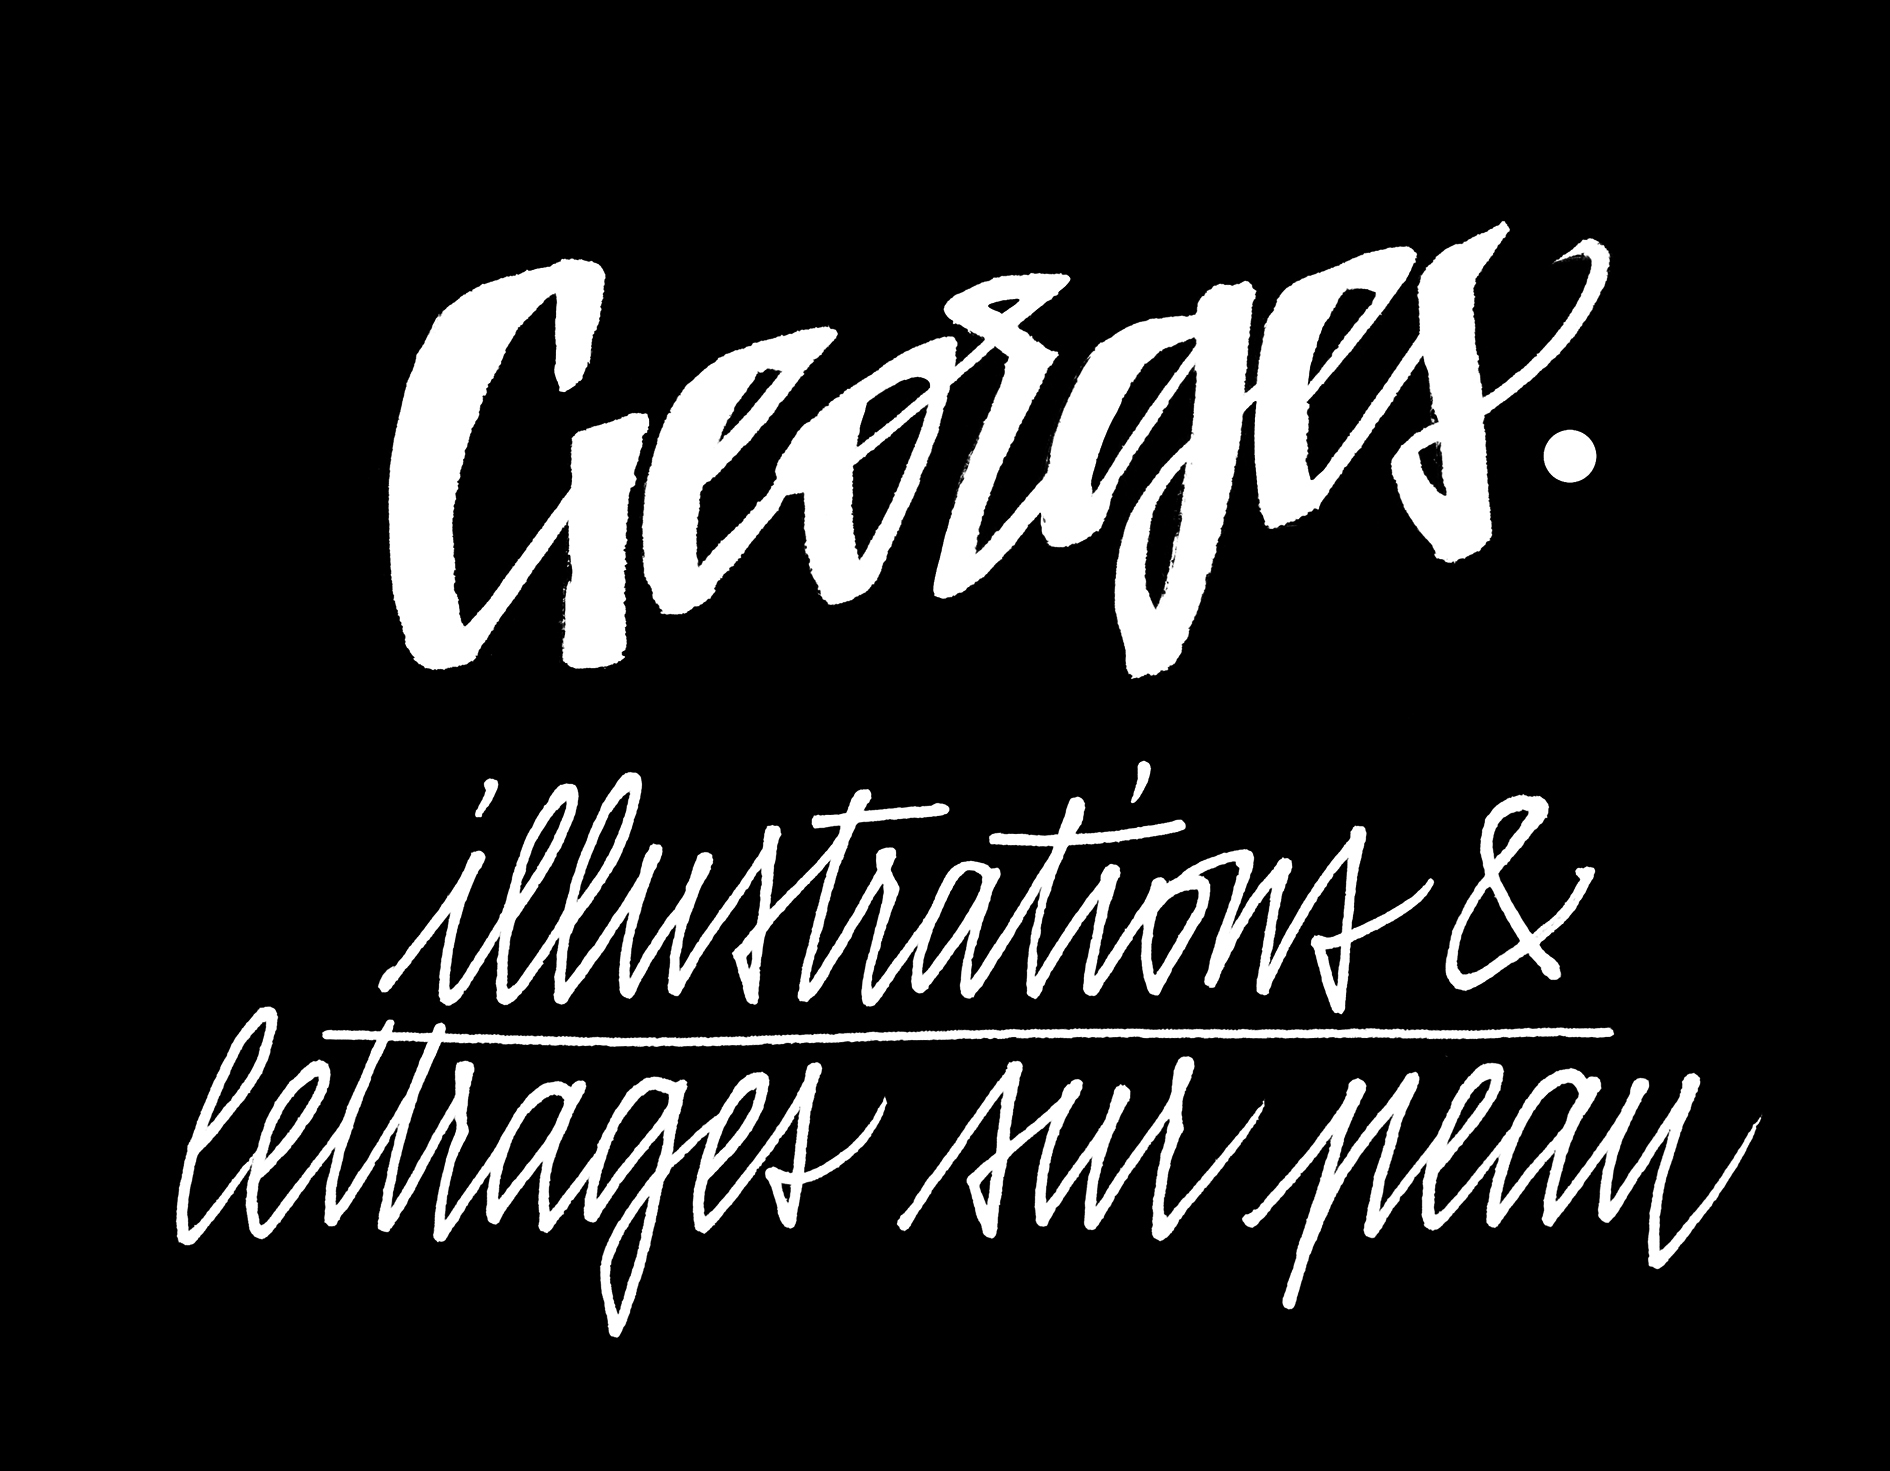 Georges, illustrations & lettrages sur peau. Image calligraphiée